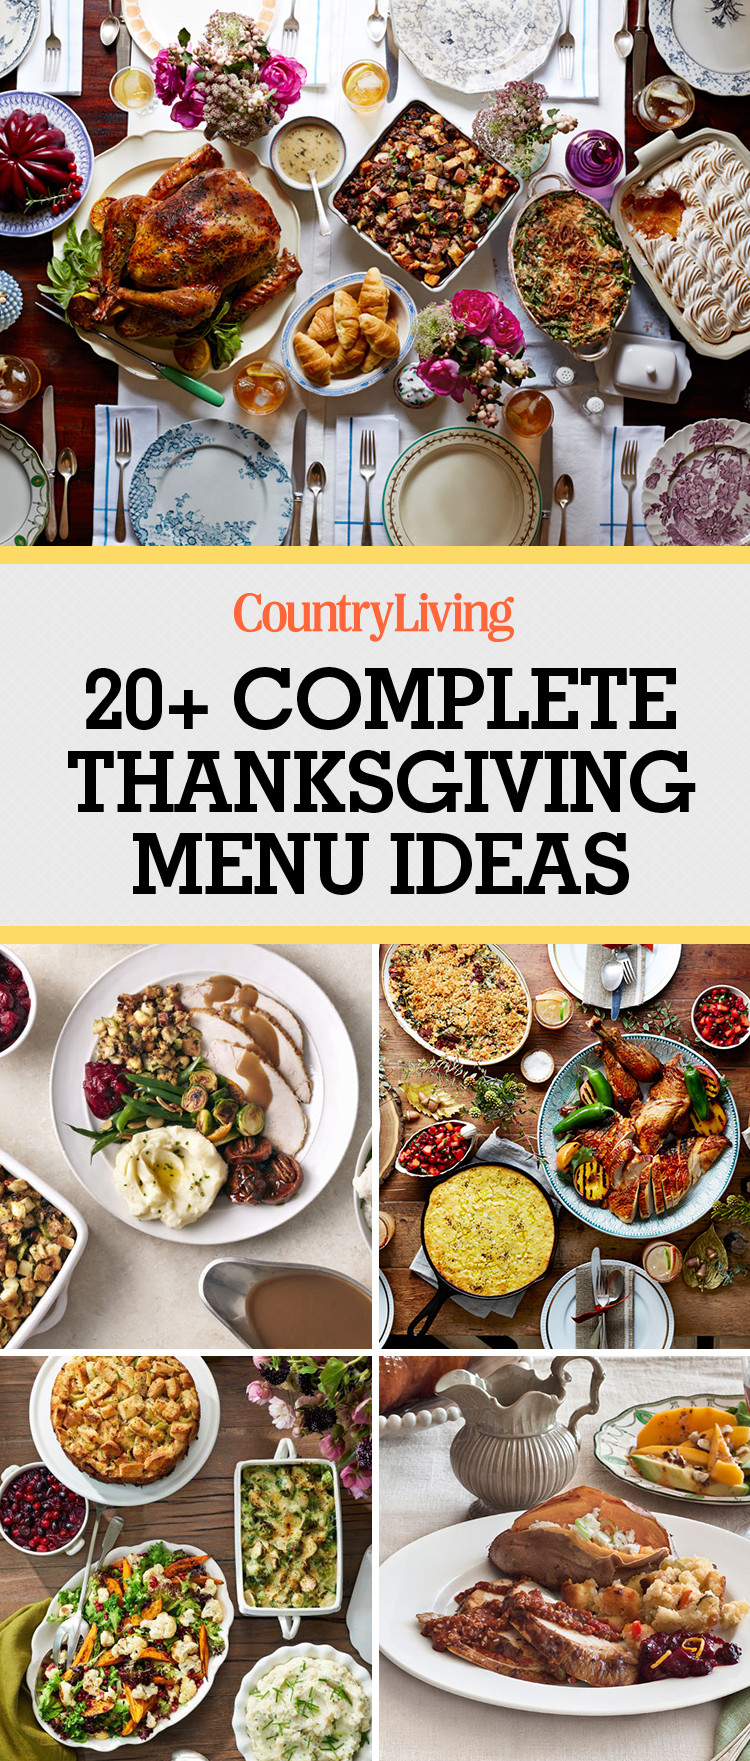 Thanksgiving Breakfast Menu Ideas
 26 Thanksgiving Menu Ideas Thanksgiving Dinner Menu Recipes